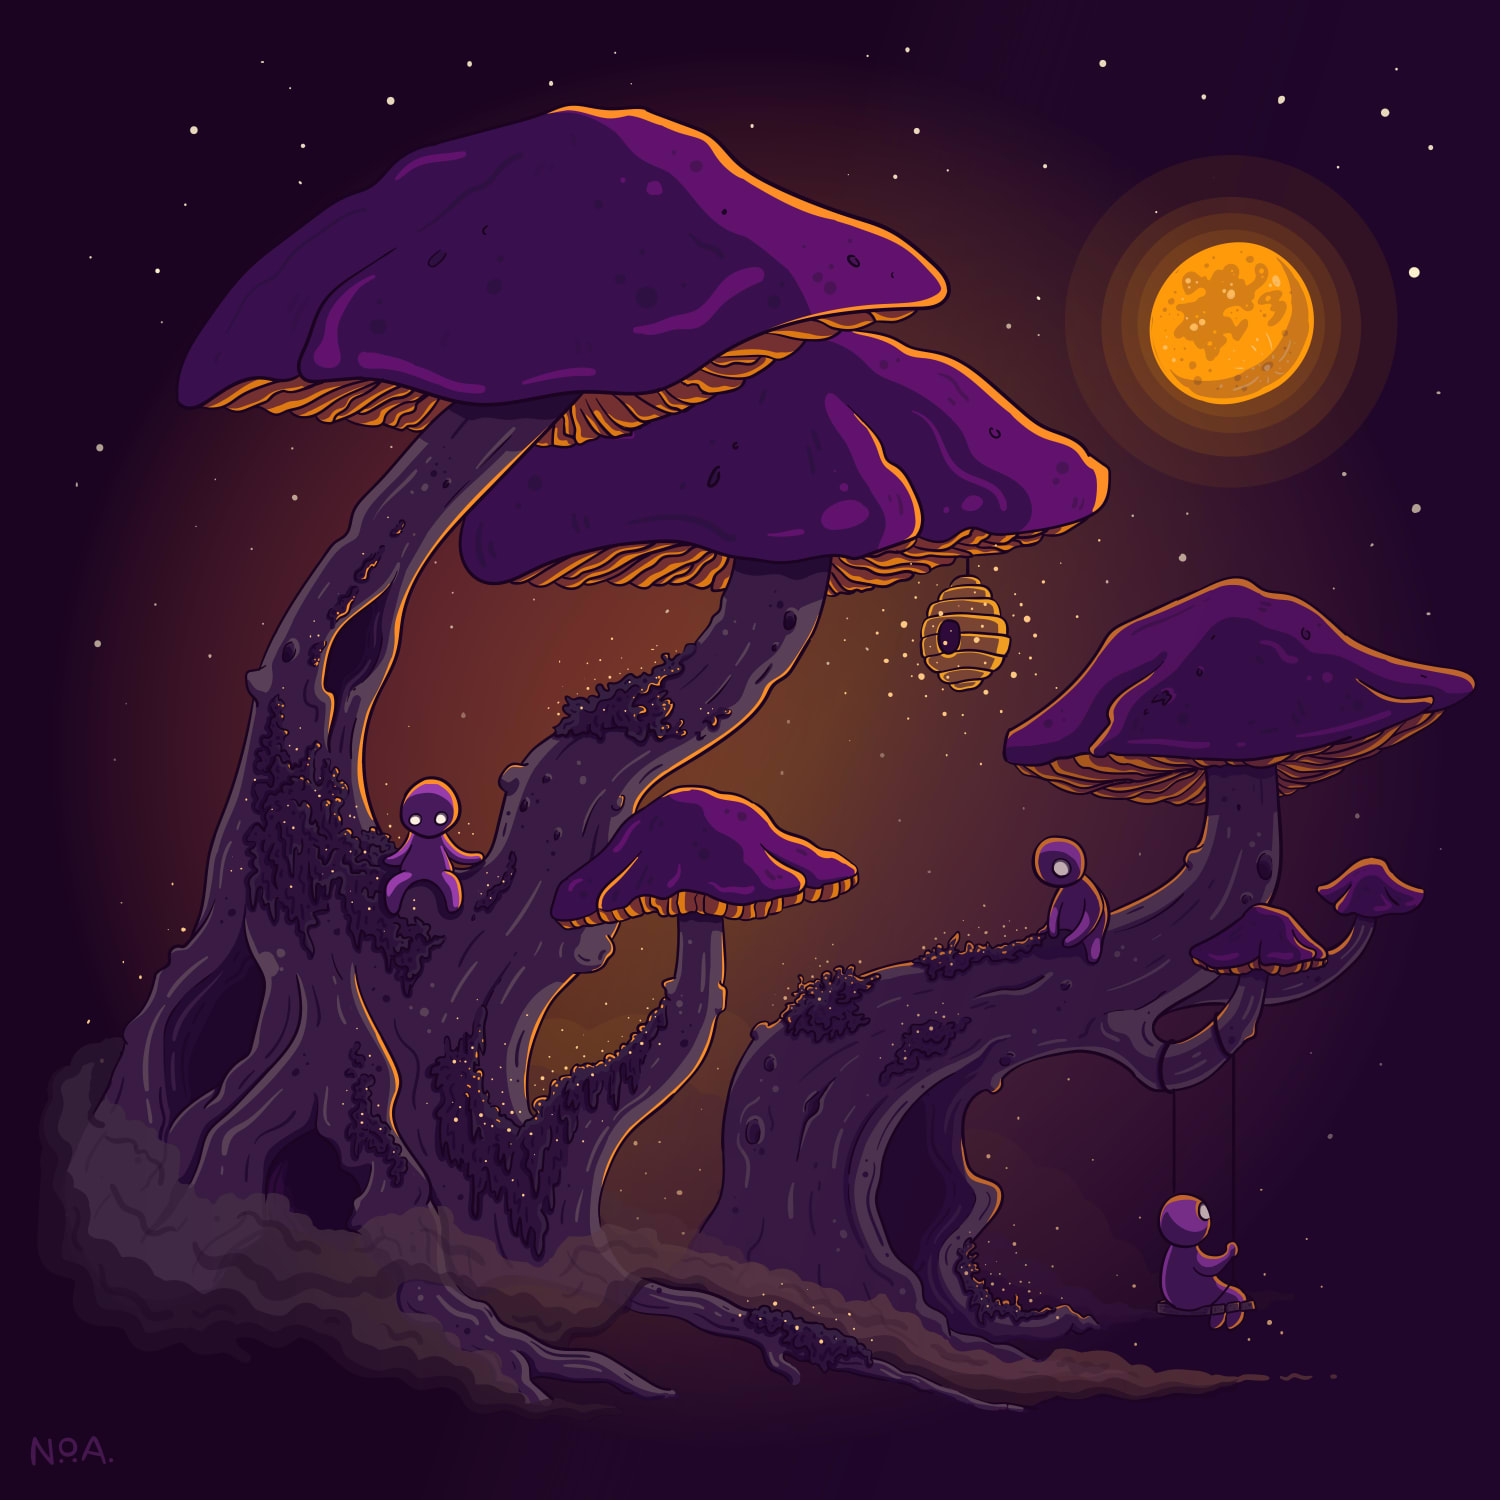 Mushroom trees, Me, adobe Illustrator, 2021